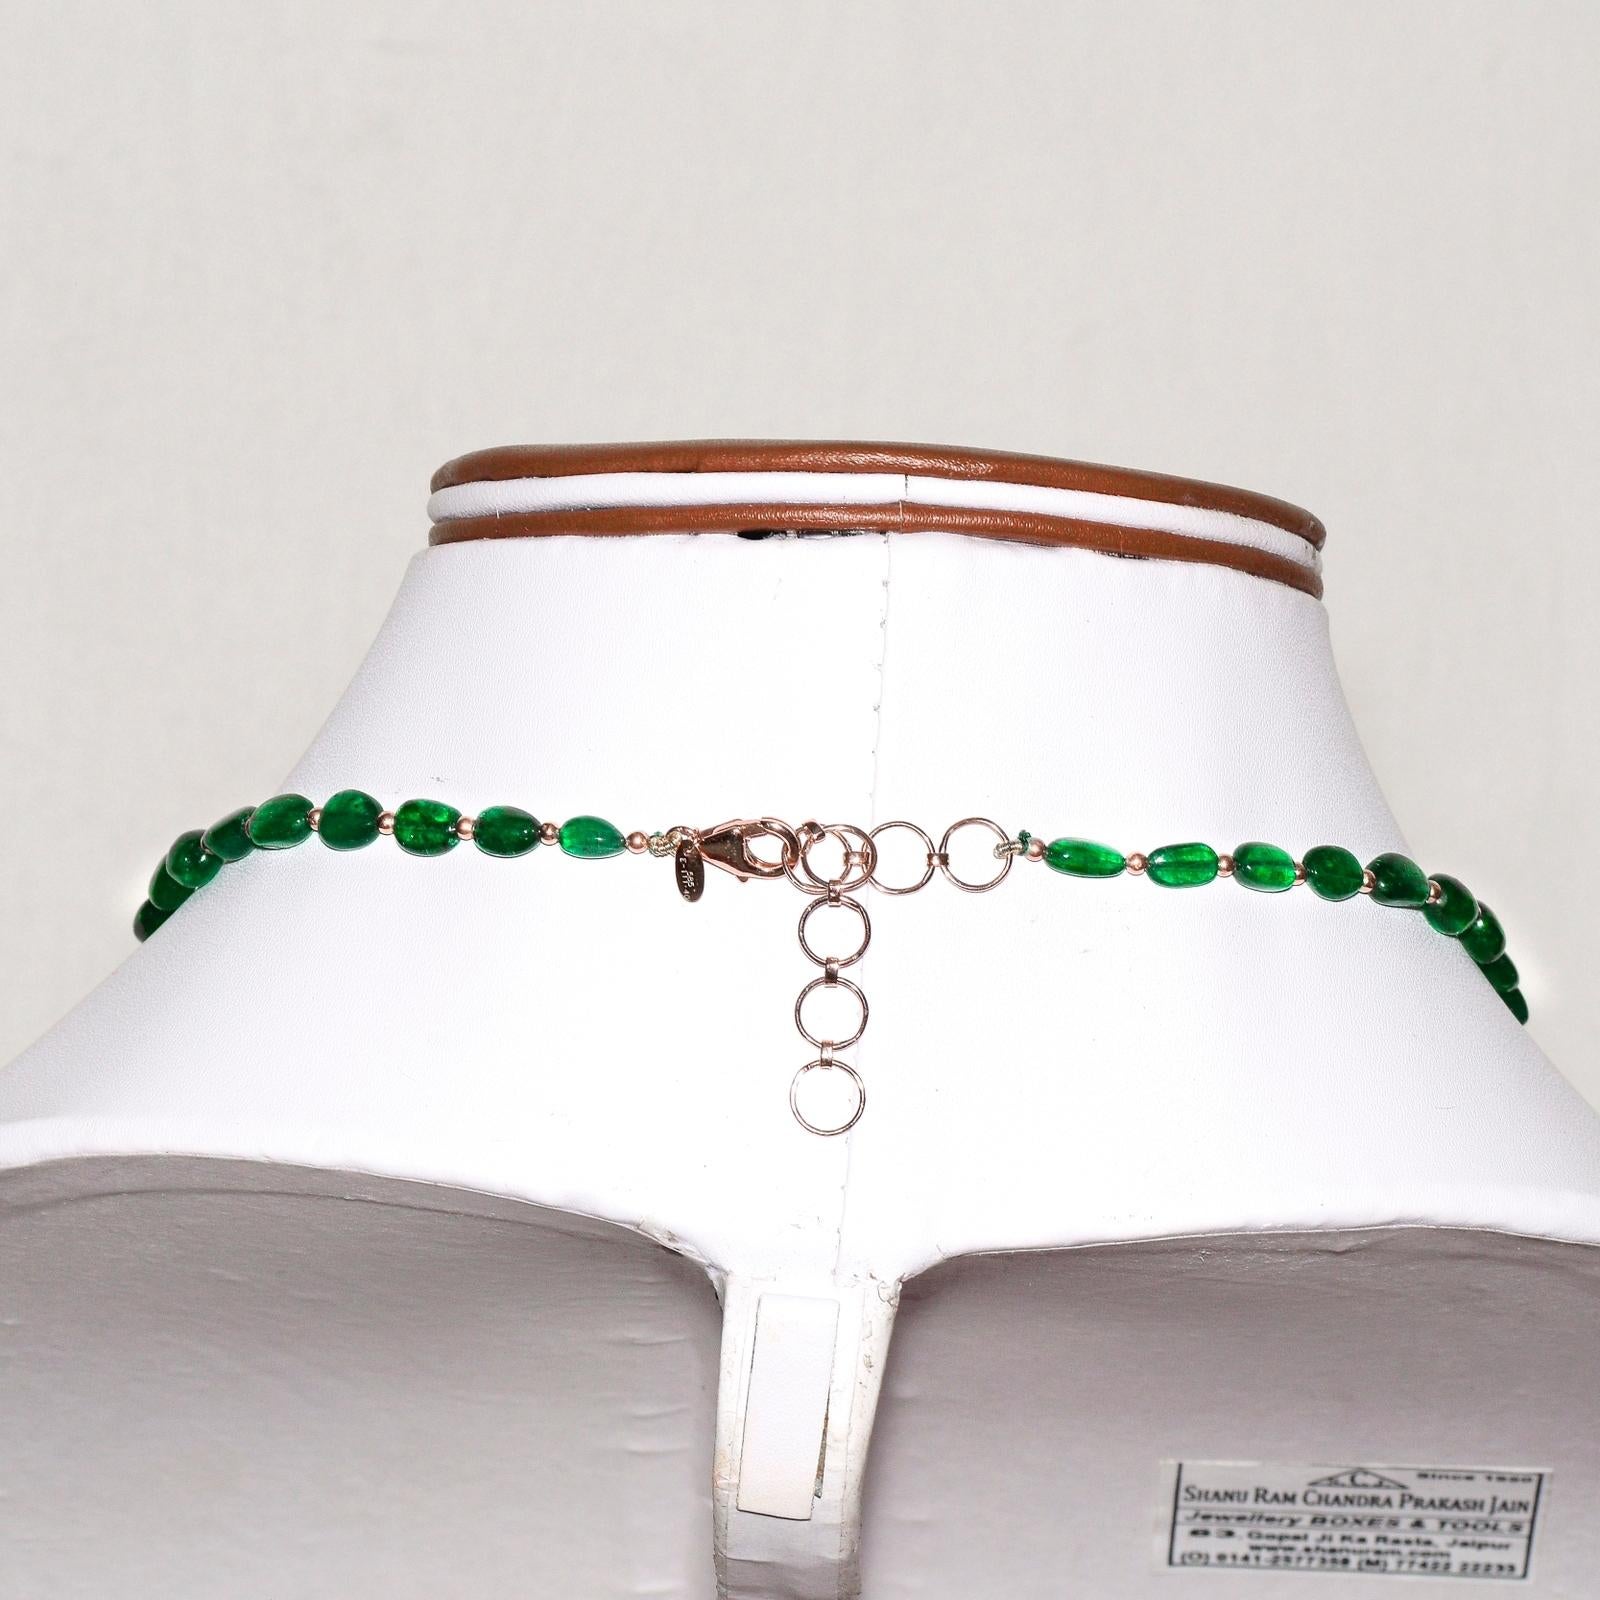 IGI 14K 111.40 Ct Emerald Antique Art Deco Style Necklace For Sale 1